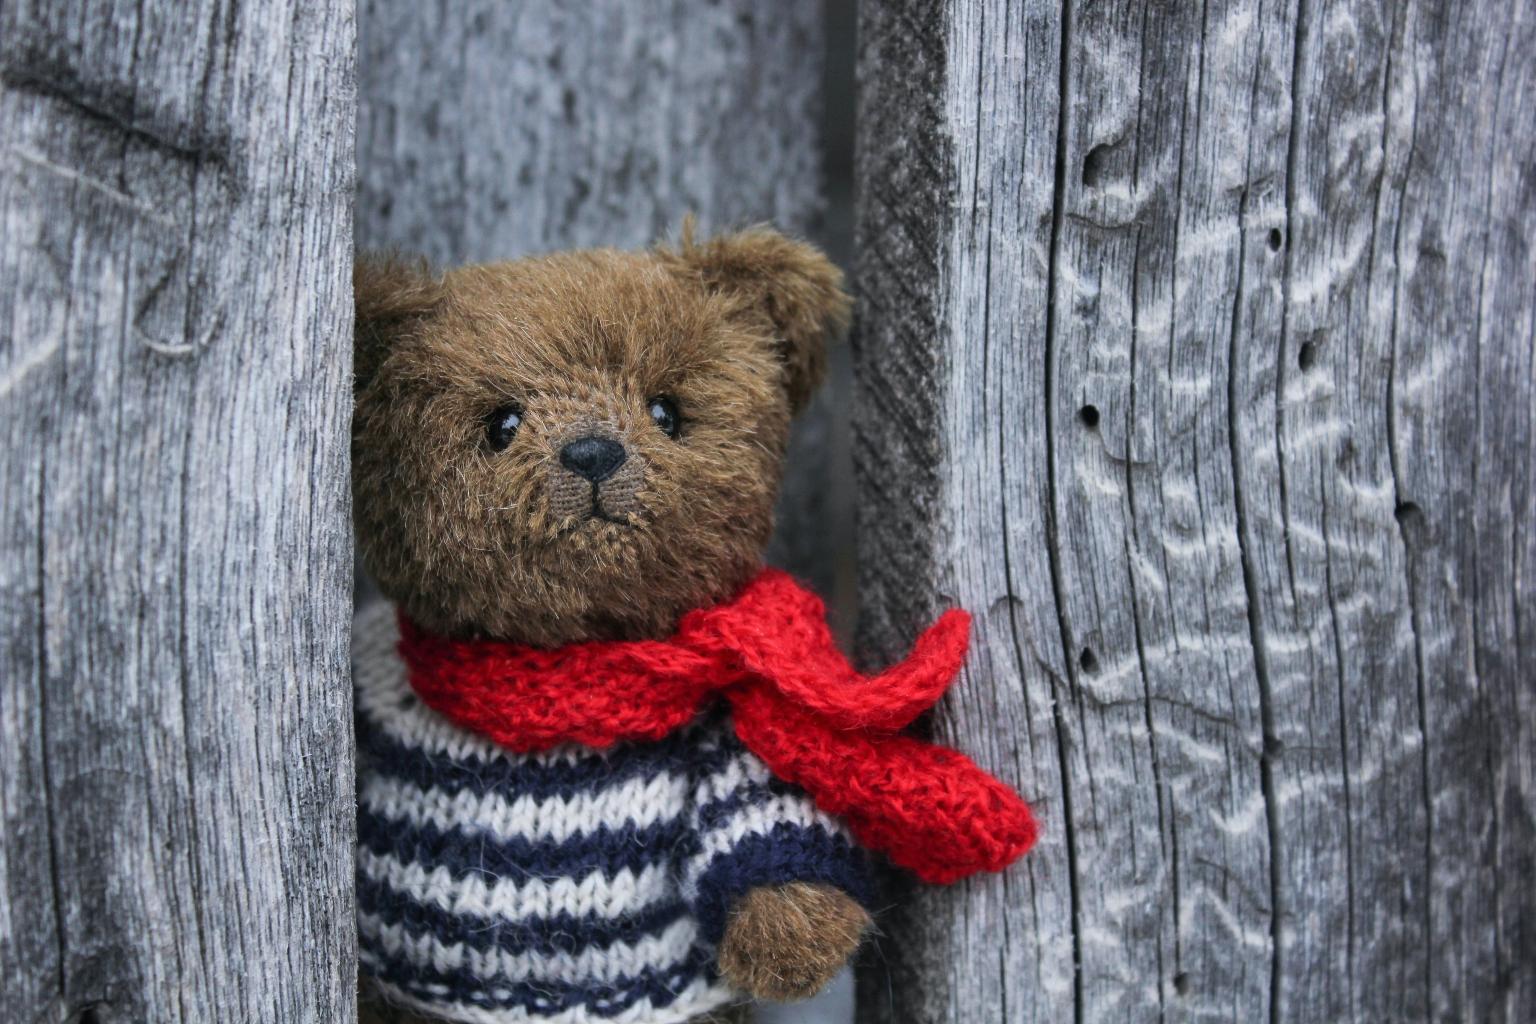 Teddy (c) Foto von Oxana Lyashenko auf Unsplash